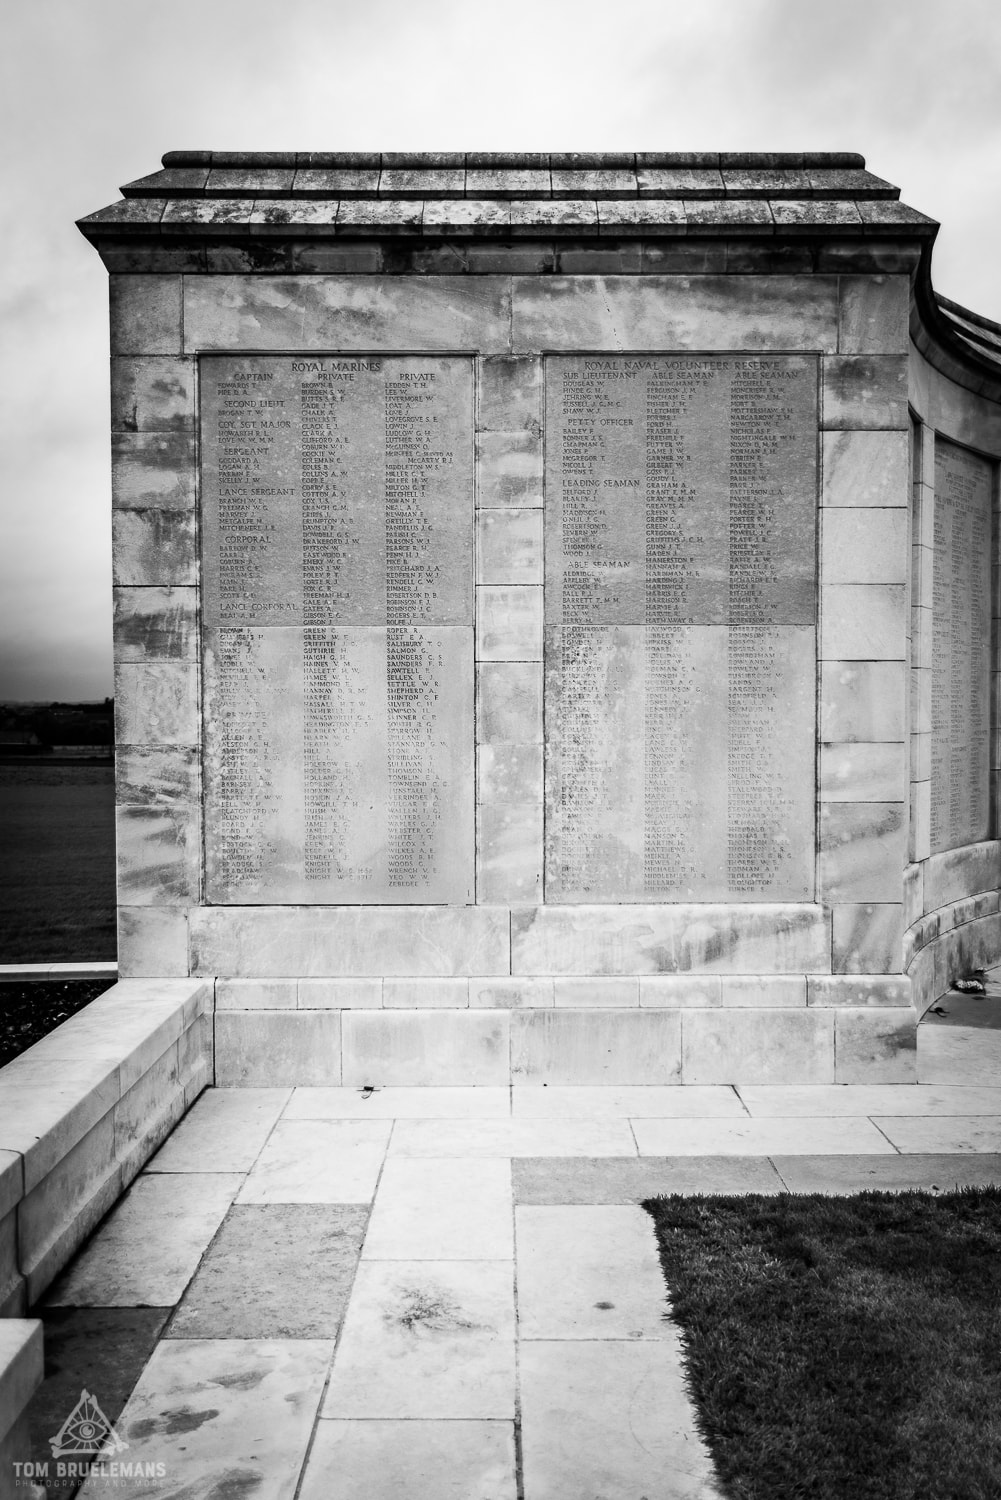 Panel 1&2 of the Tyne Cot Memorial Wall, Zonnebeke, Belgium. 